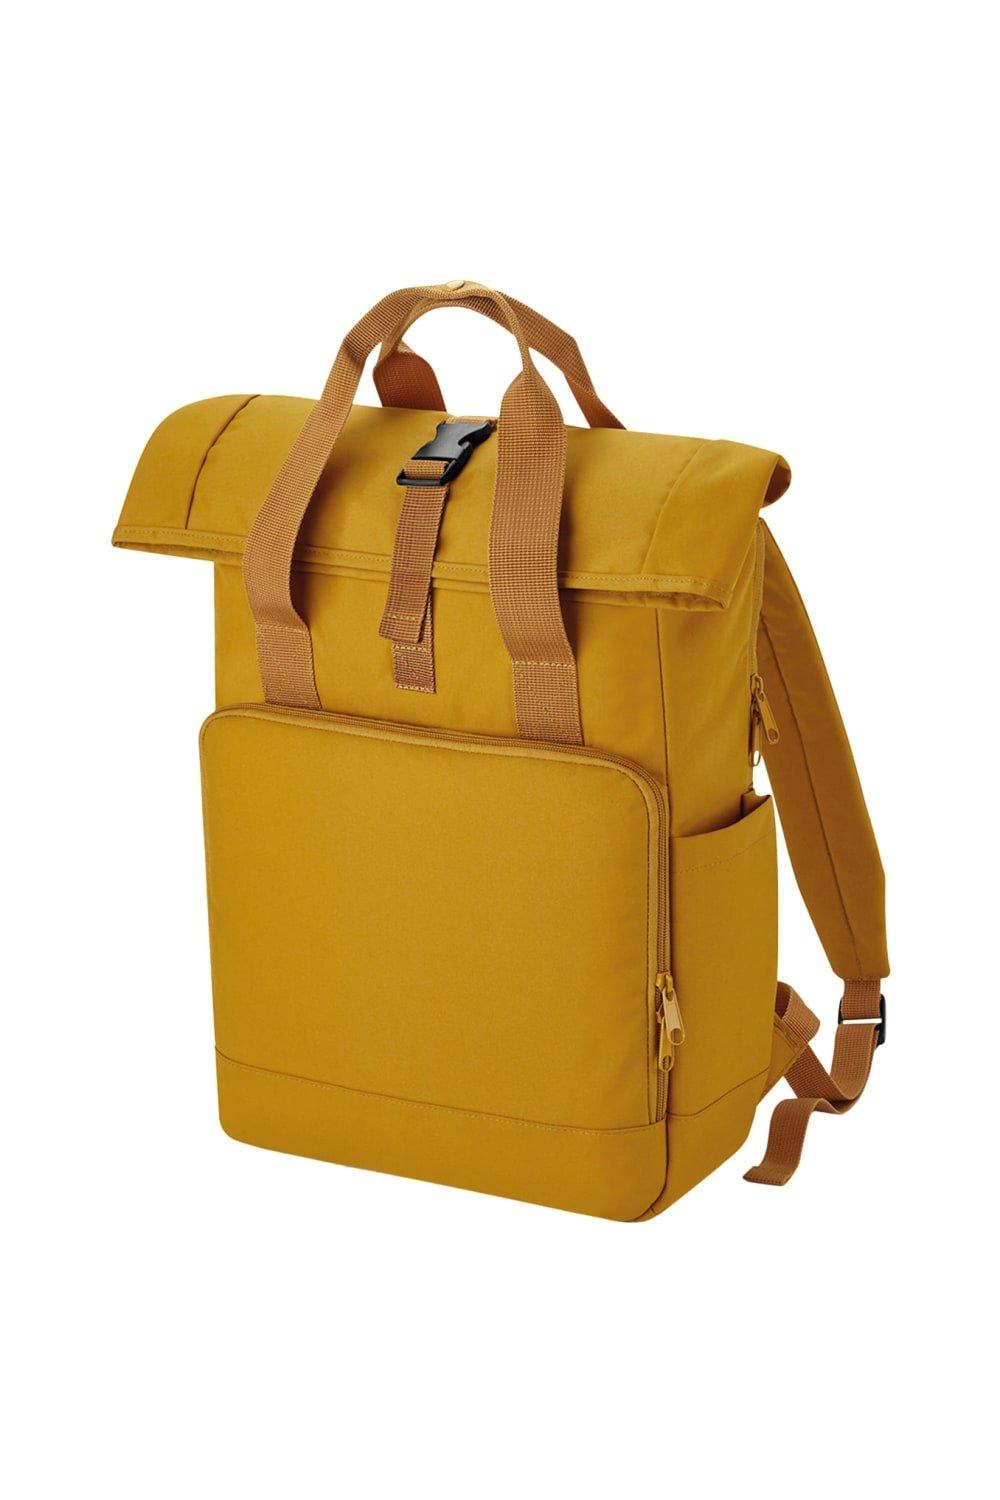 Рюкзак Roll Top из переработанного материала с двумя ручками Bagbase, желтый